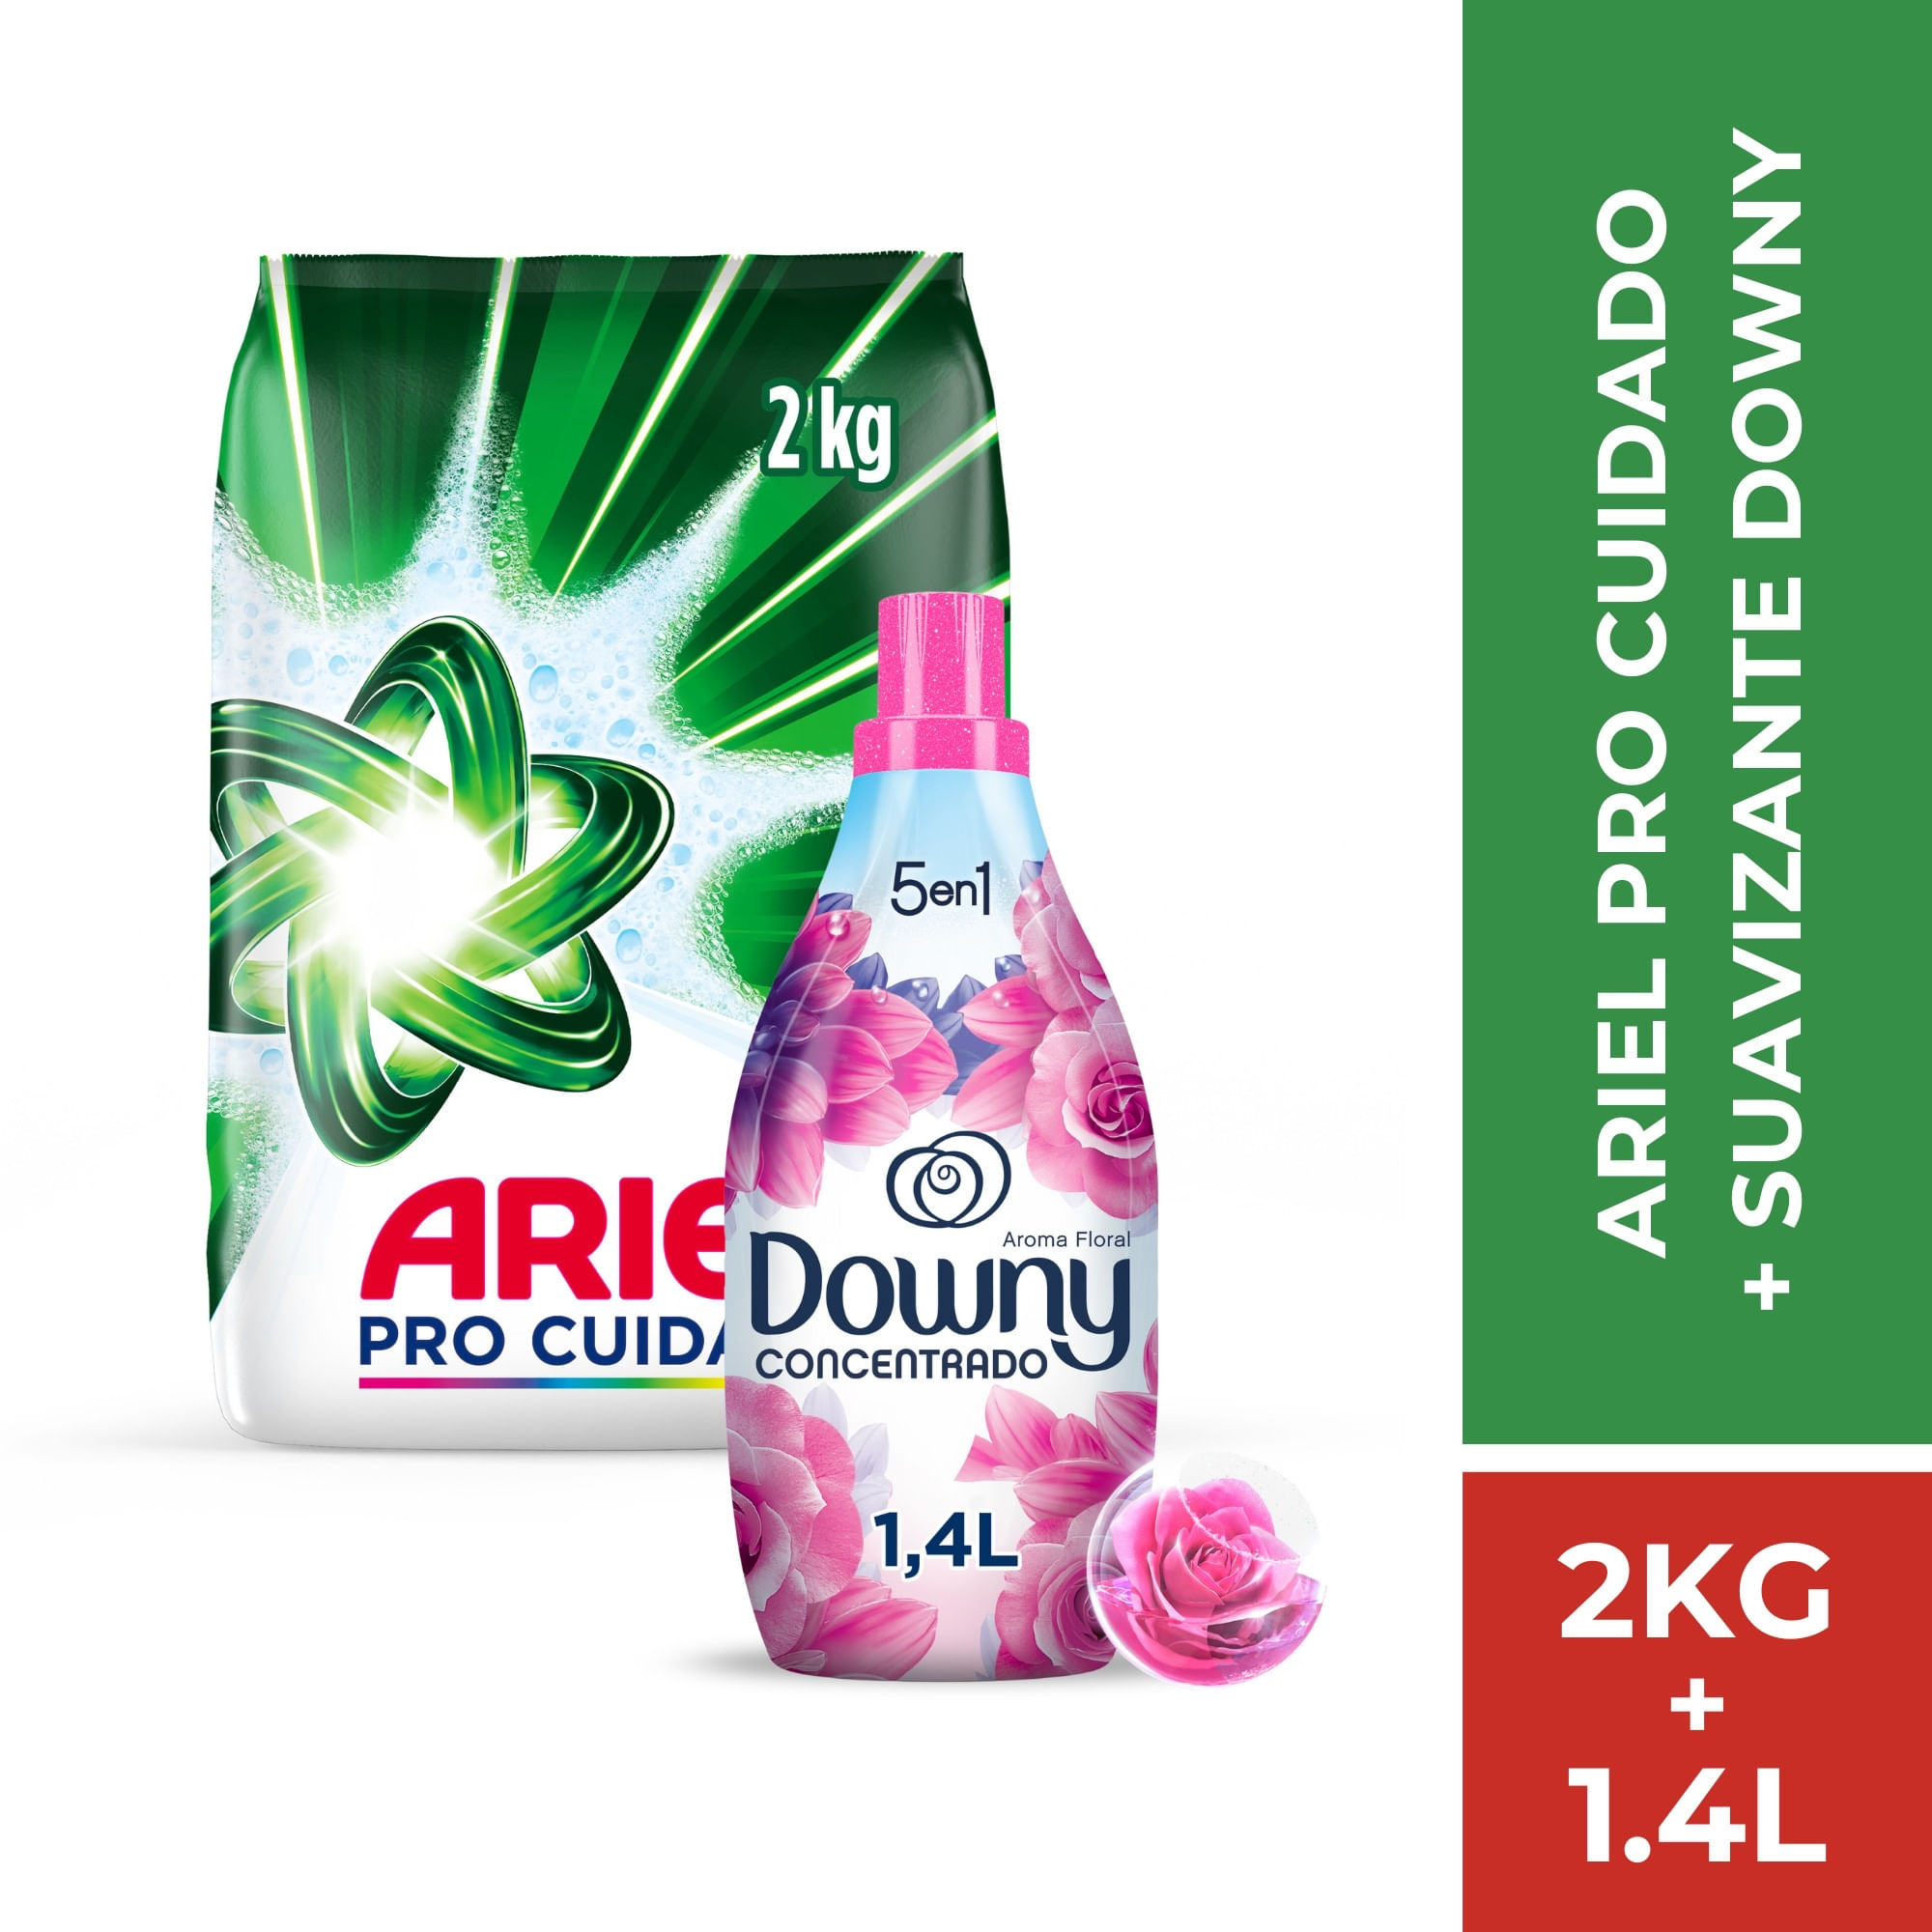 Pack Detergente en Polvo ARIEL Pro Cuidado 2 kg + Suavizante DOWNY Floral Concentrado 1.4L